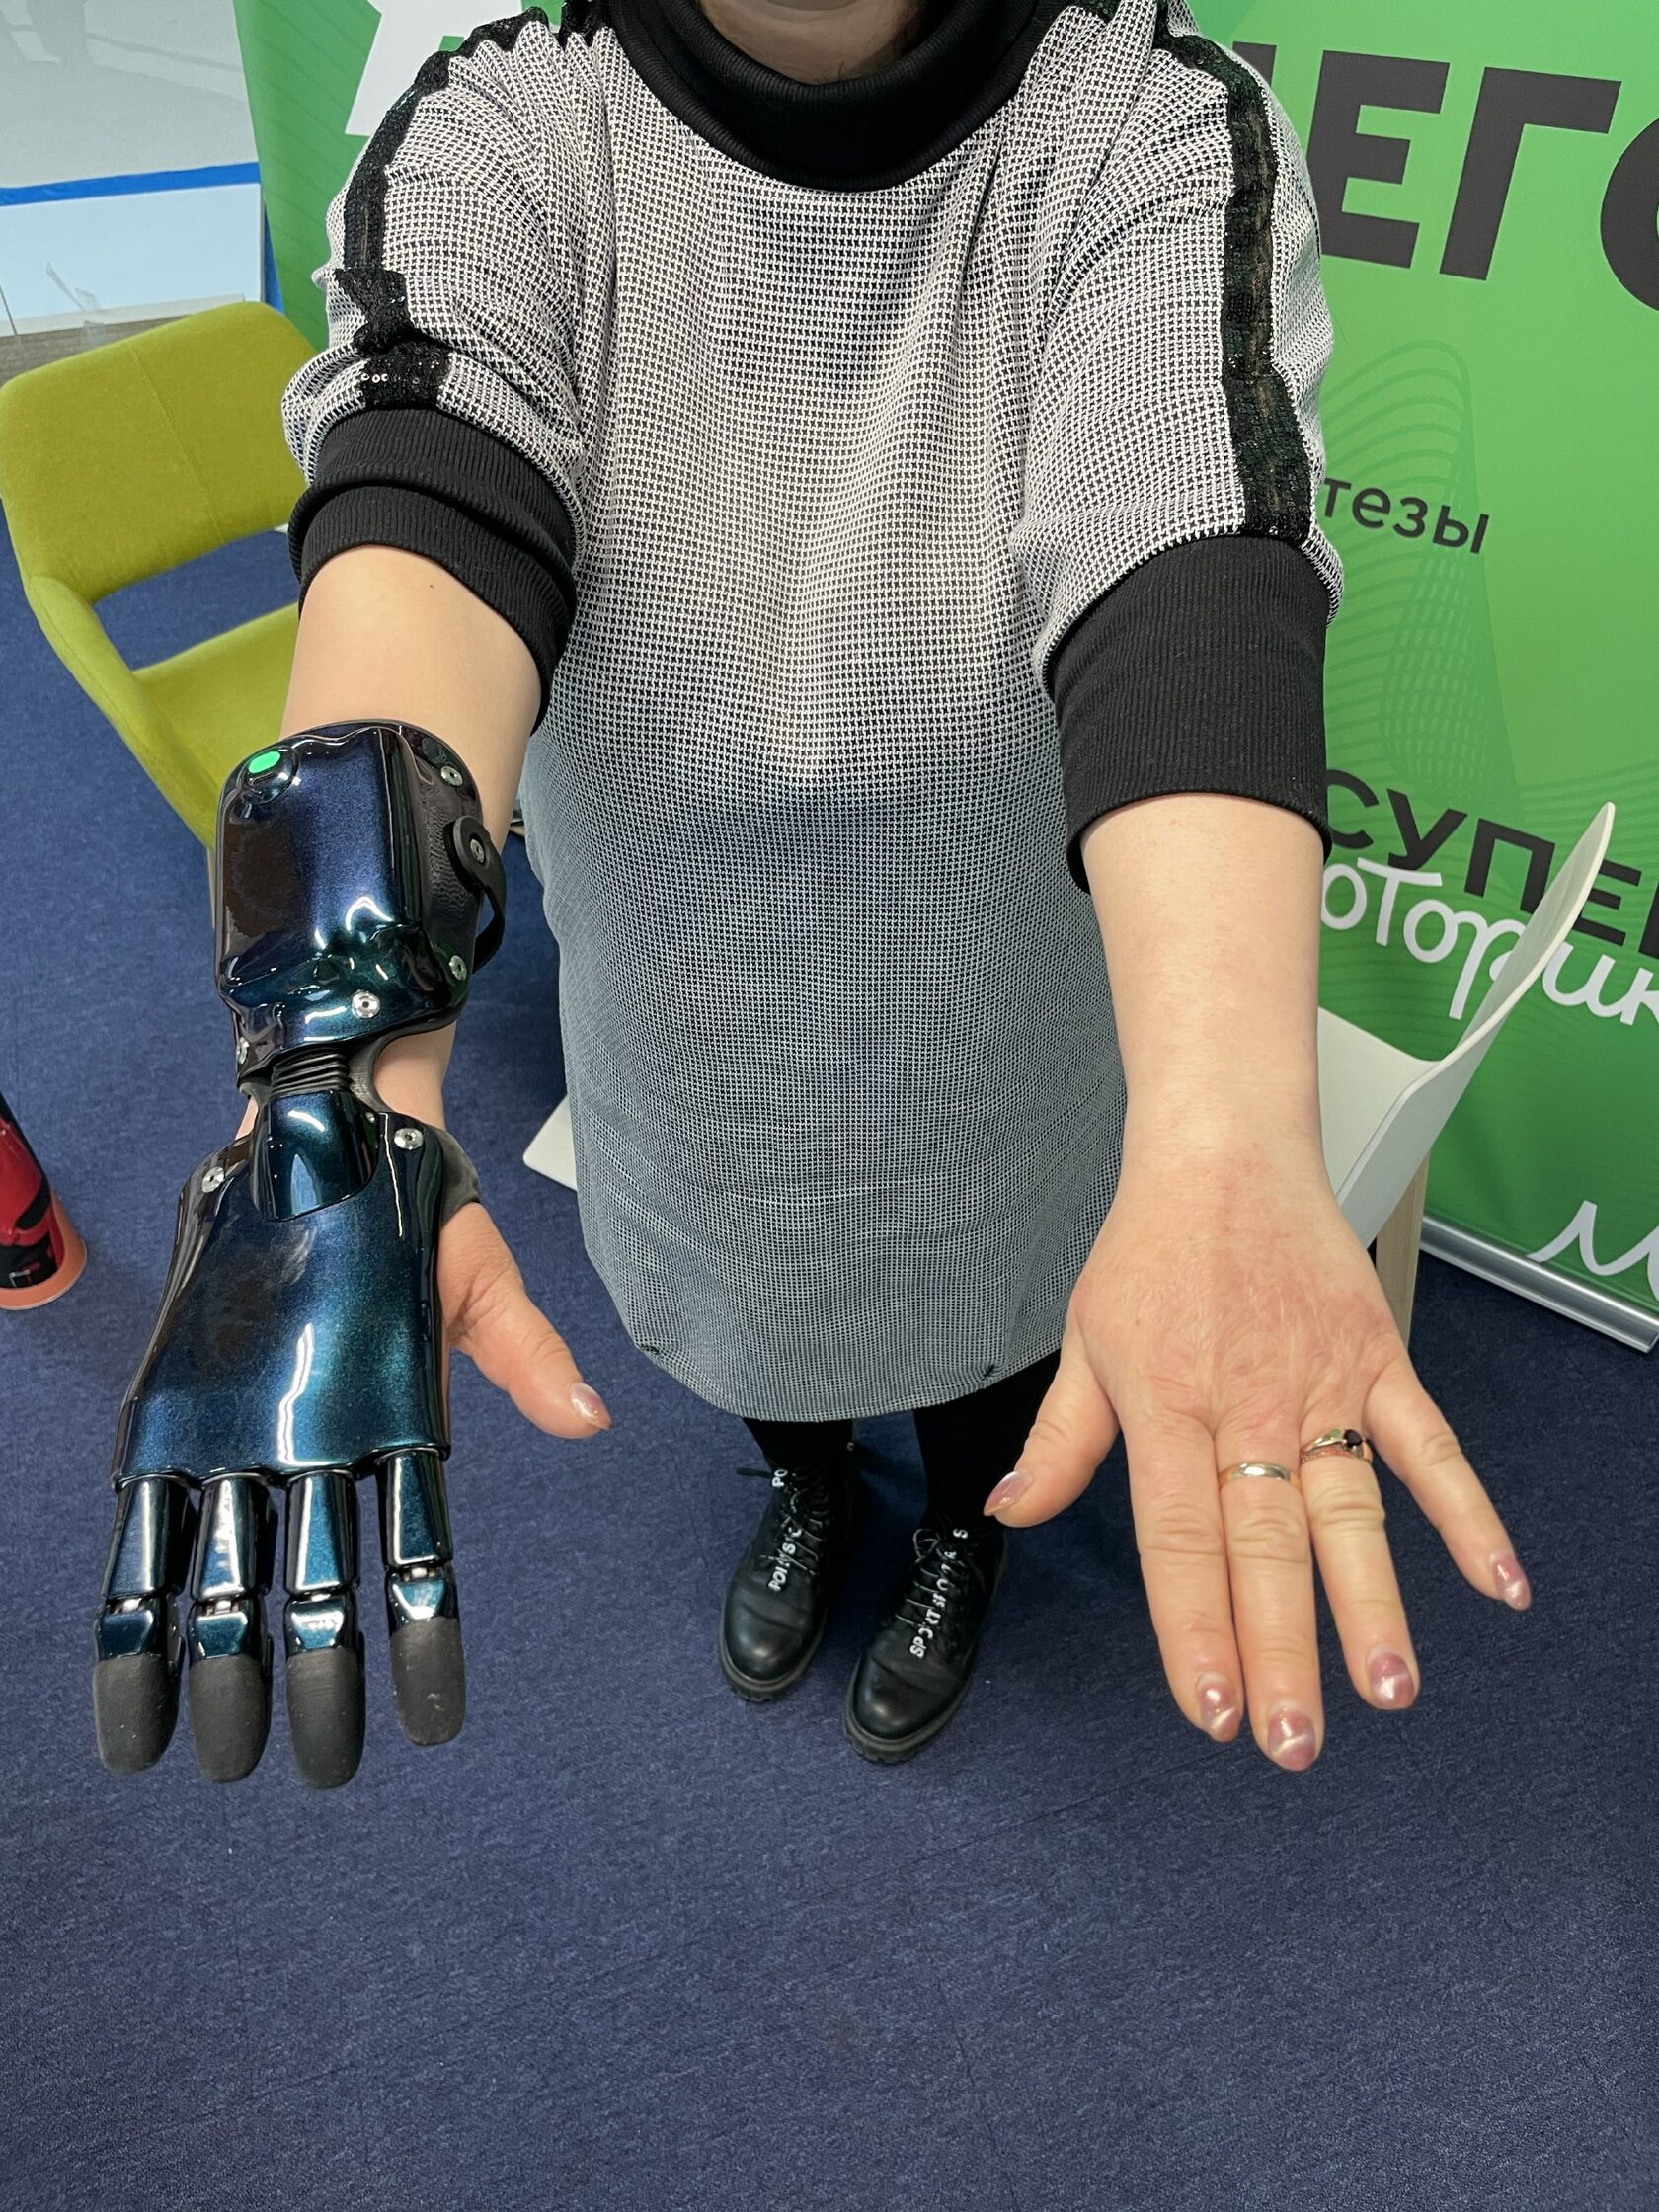 Бионический протез руки